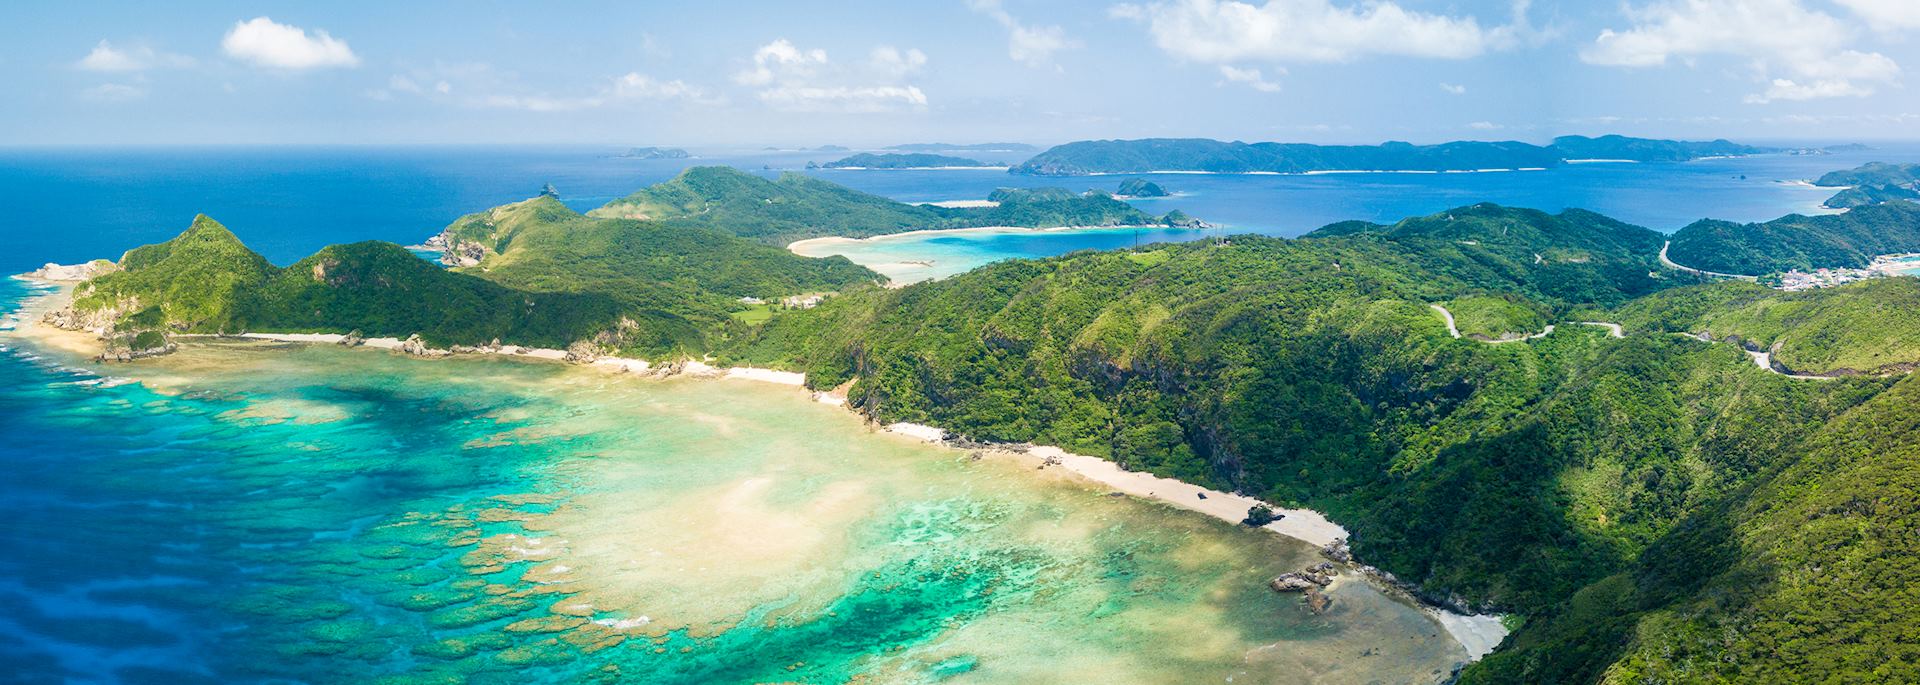 Okinawa Archipelago